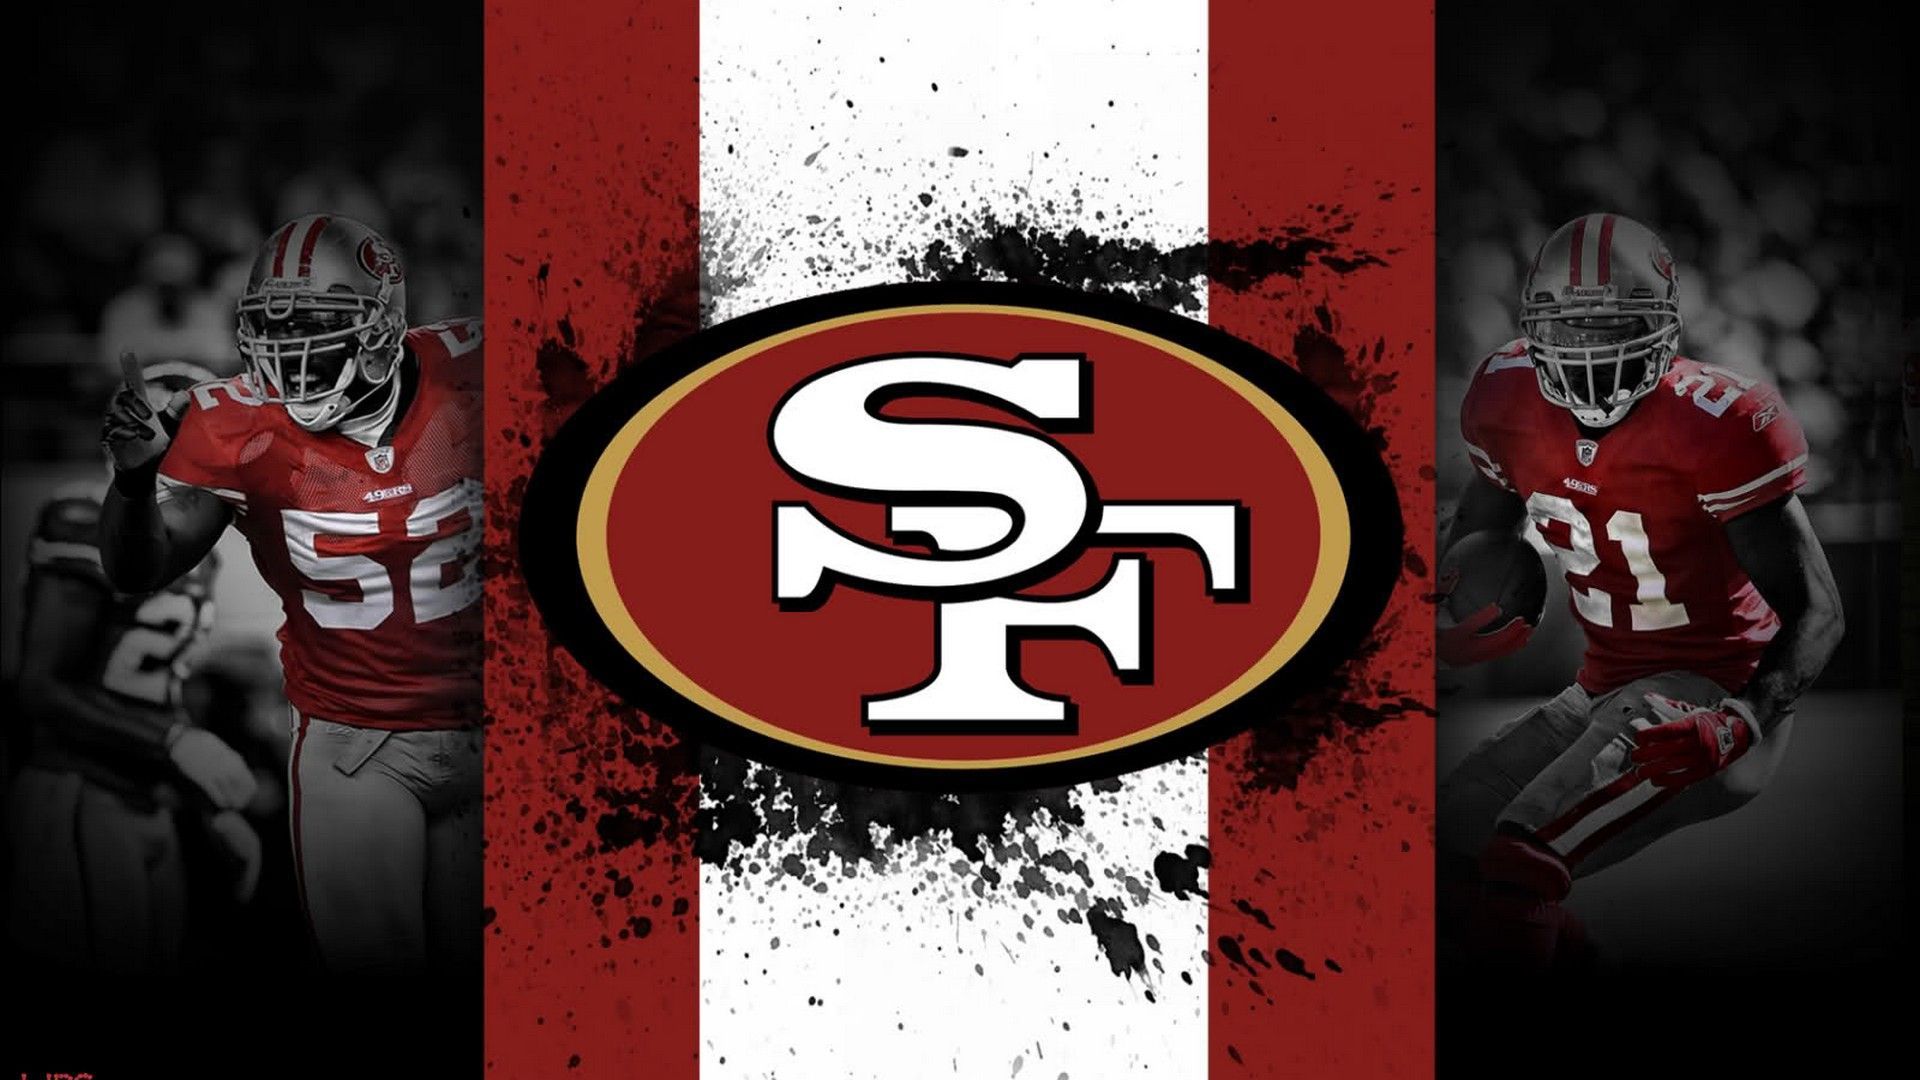 San Francisco 49ers Wallpaper NFL Football Wallpaper. San francisco 49ers, Nfl football wallpaper, Football wallpaper